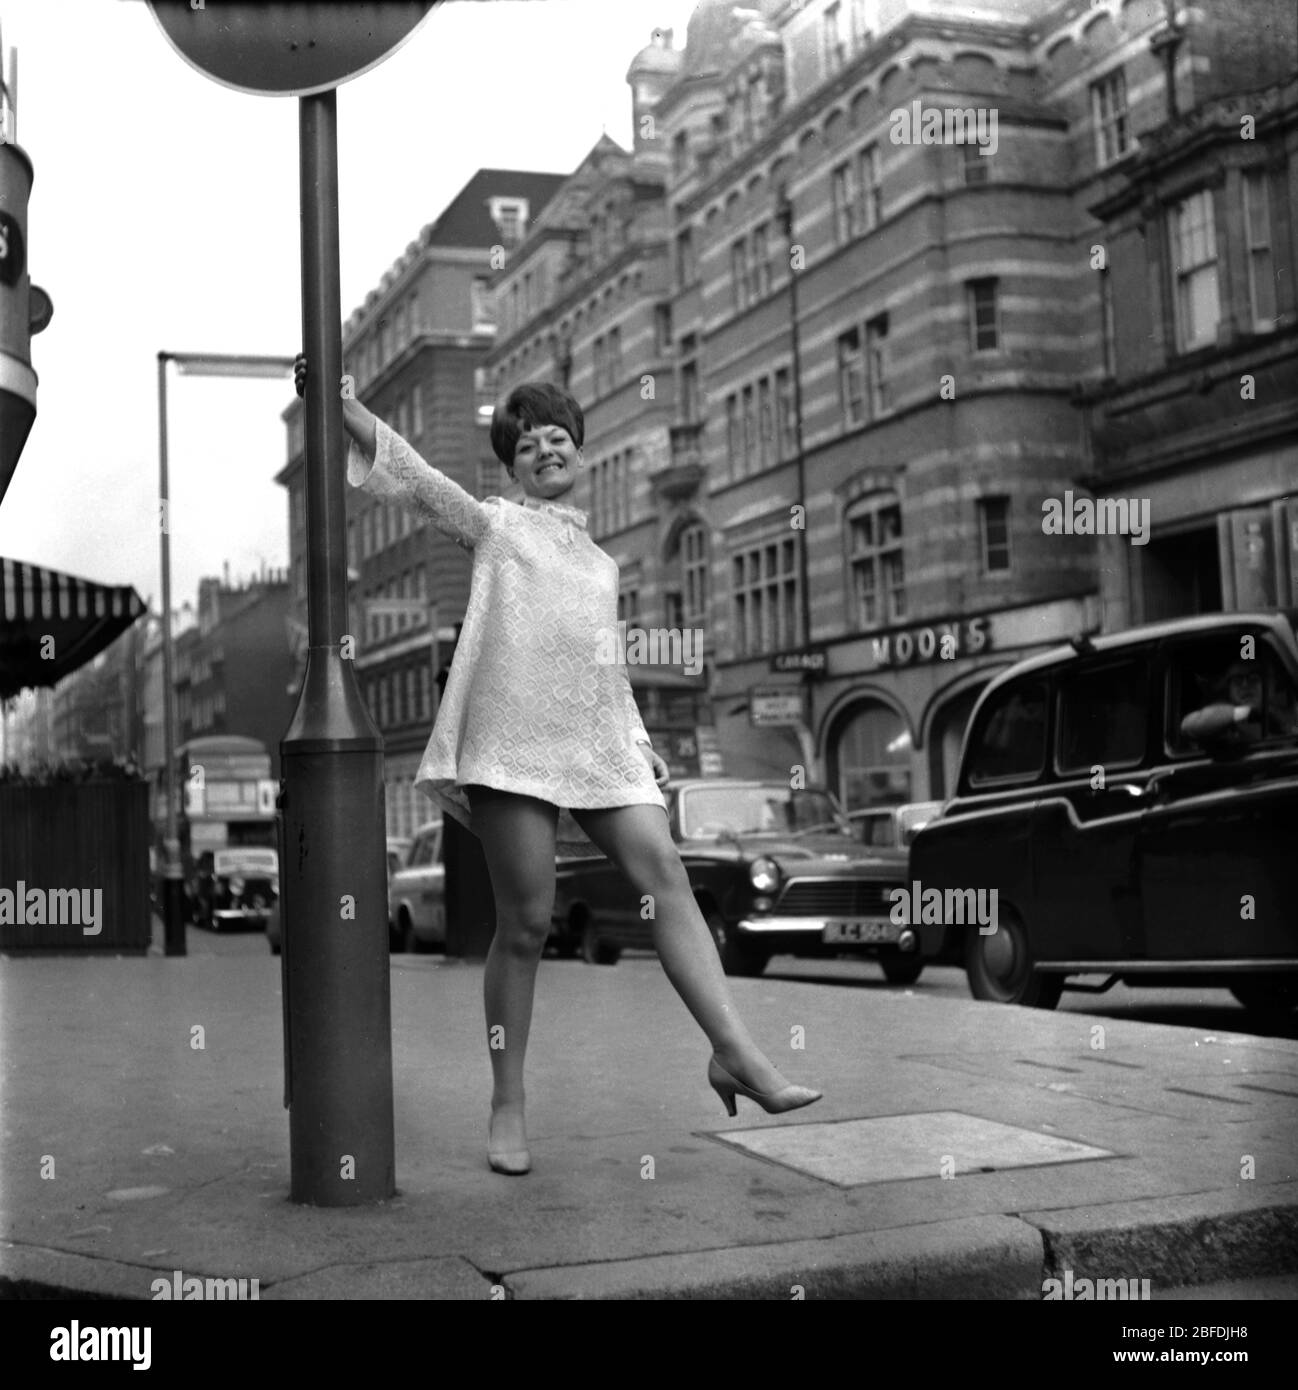 17. Mai 1967, London. Patsy Jones 1960 Pop Singer posiert auf einer Londoner Straße. Patsy hatte 1967 mit Colours of Love einen Hit. Foto von Tony Henshaw Archive Stockfoto